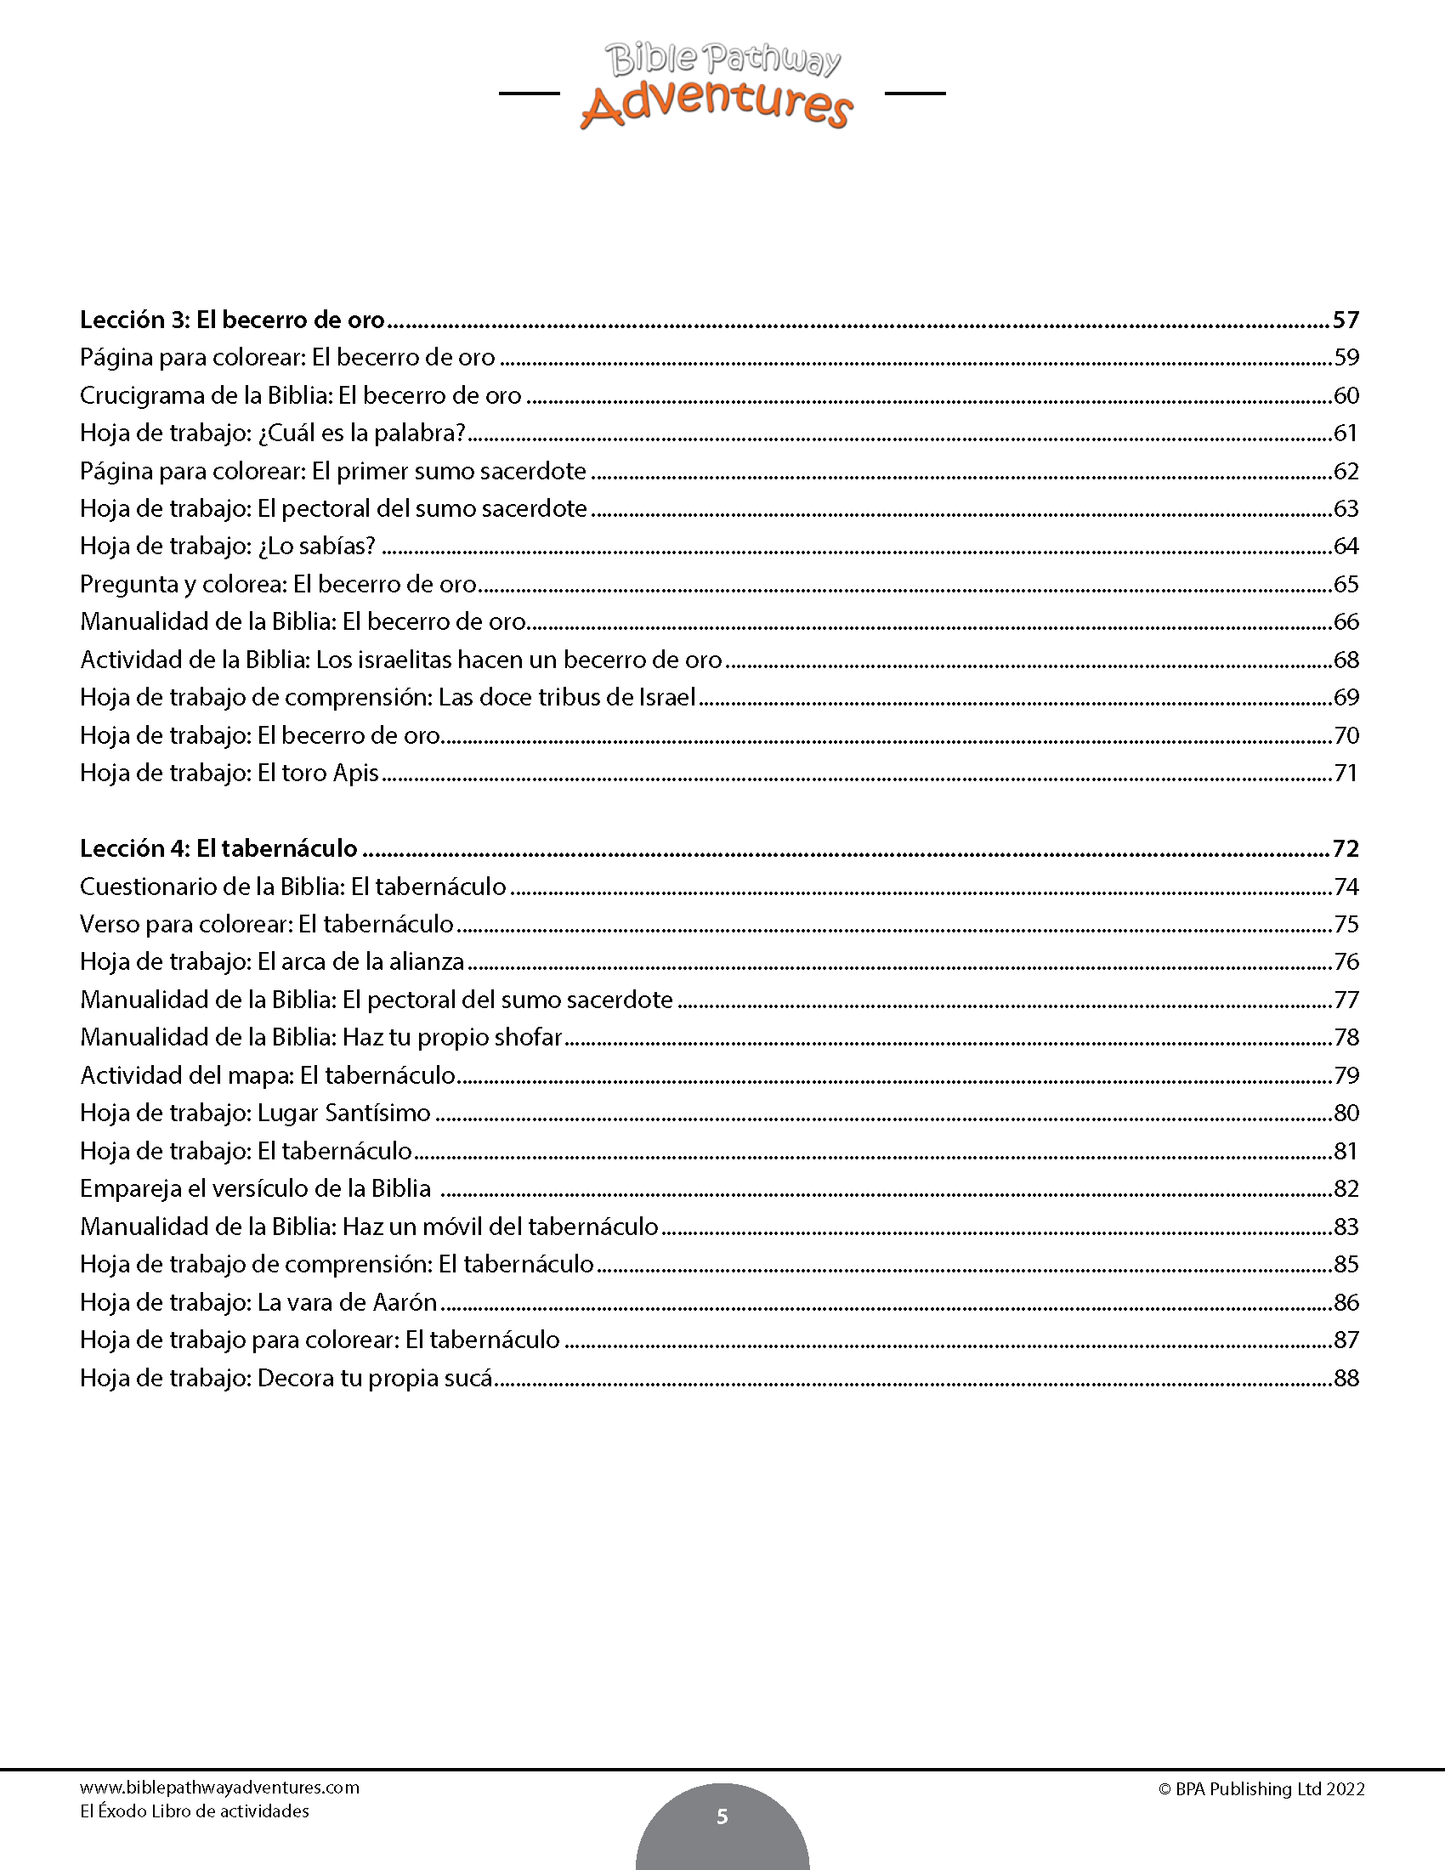 El Éxodo: Libro de actividades (PDF)